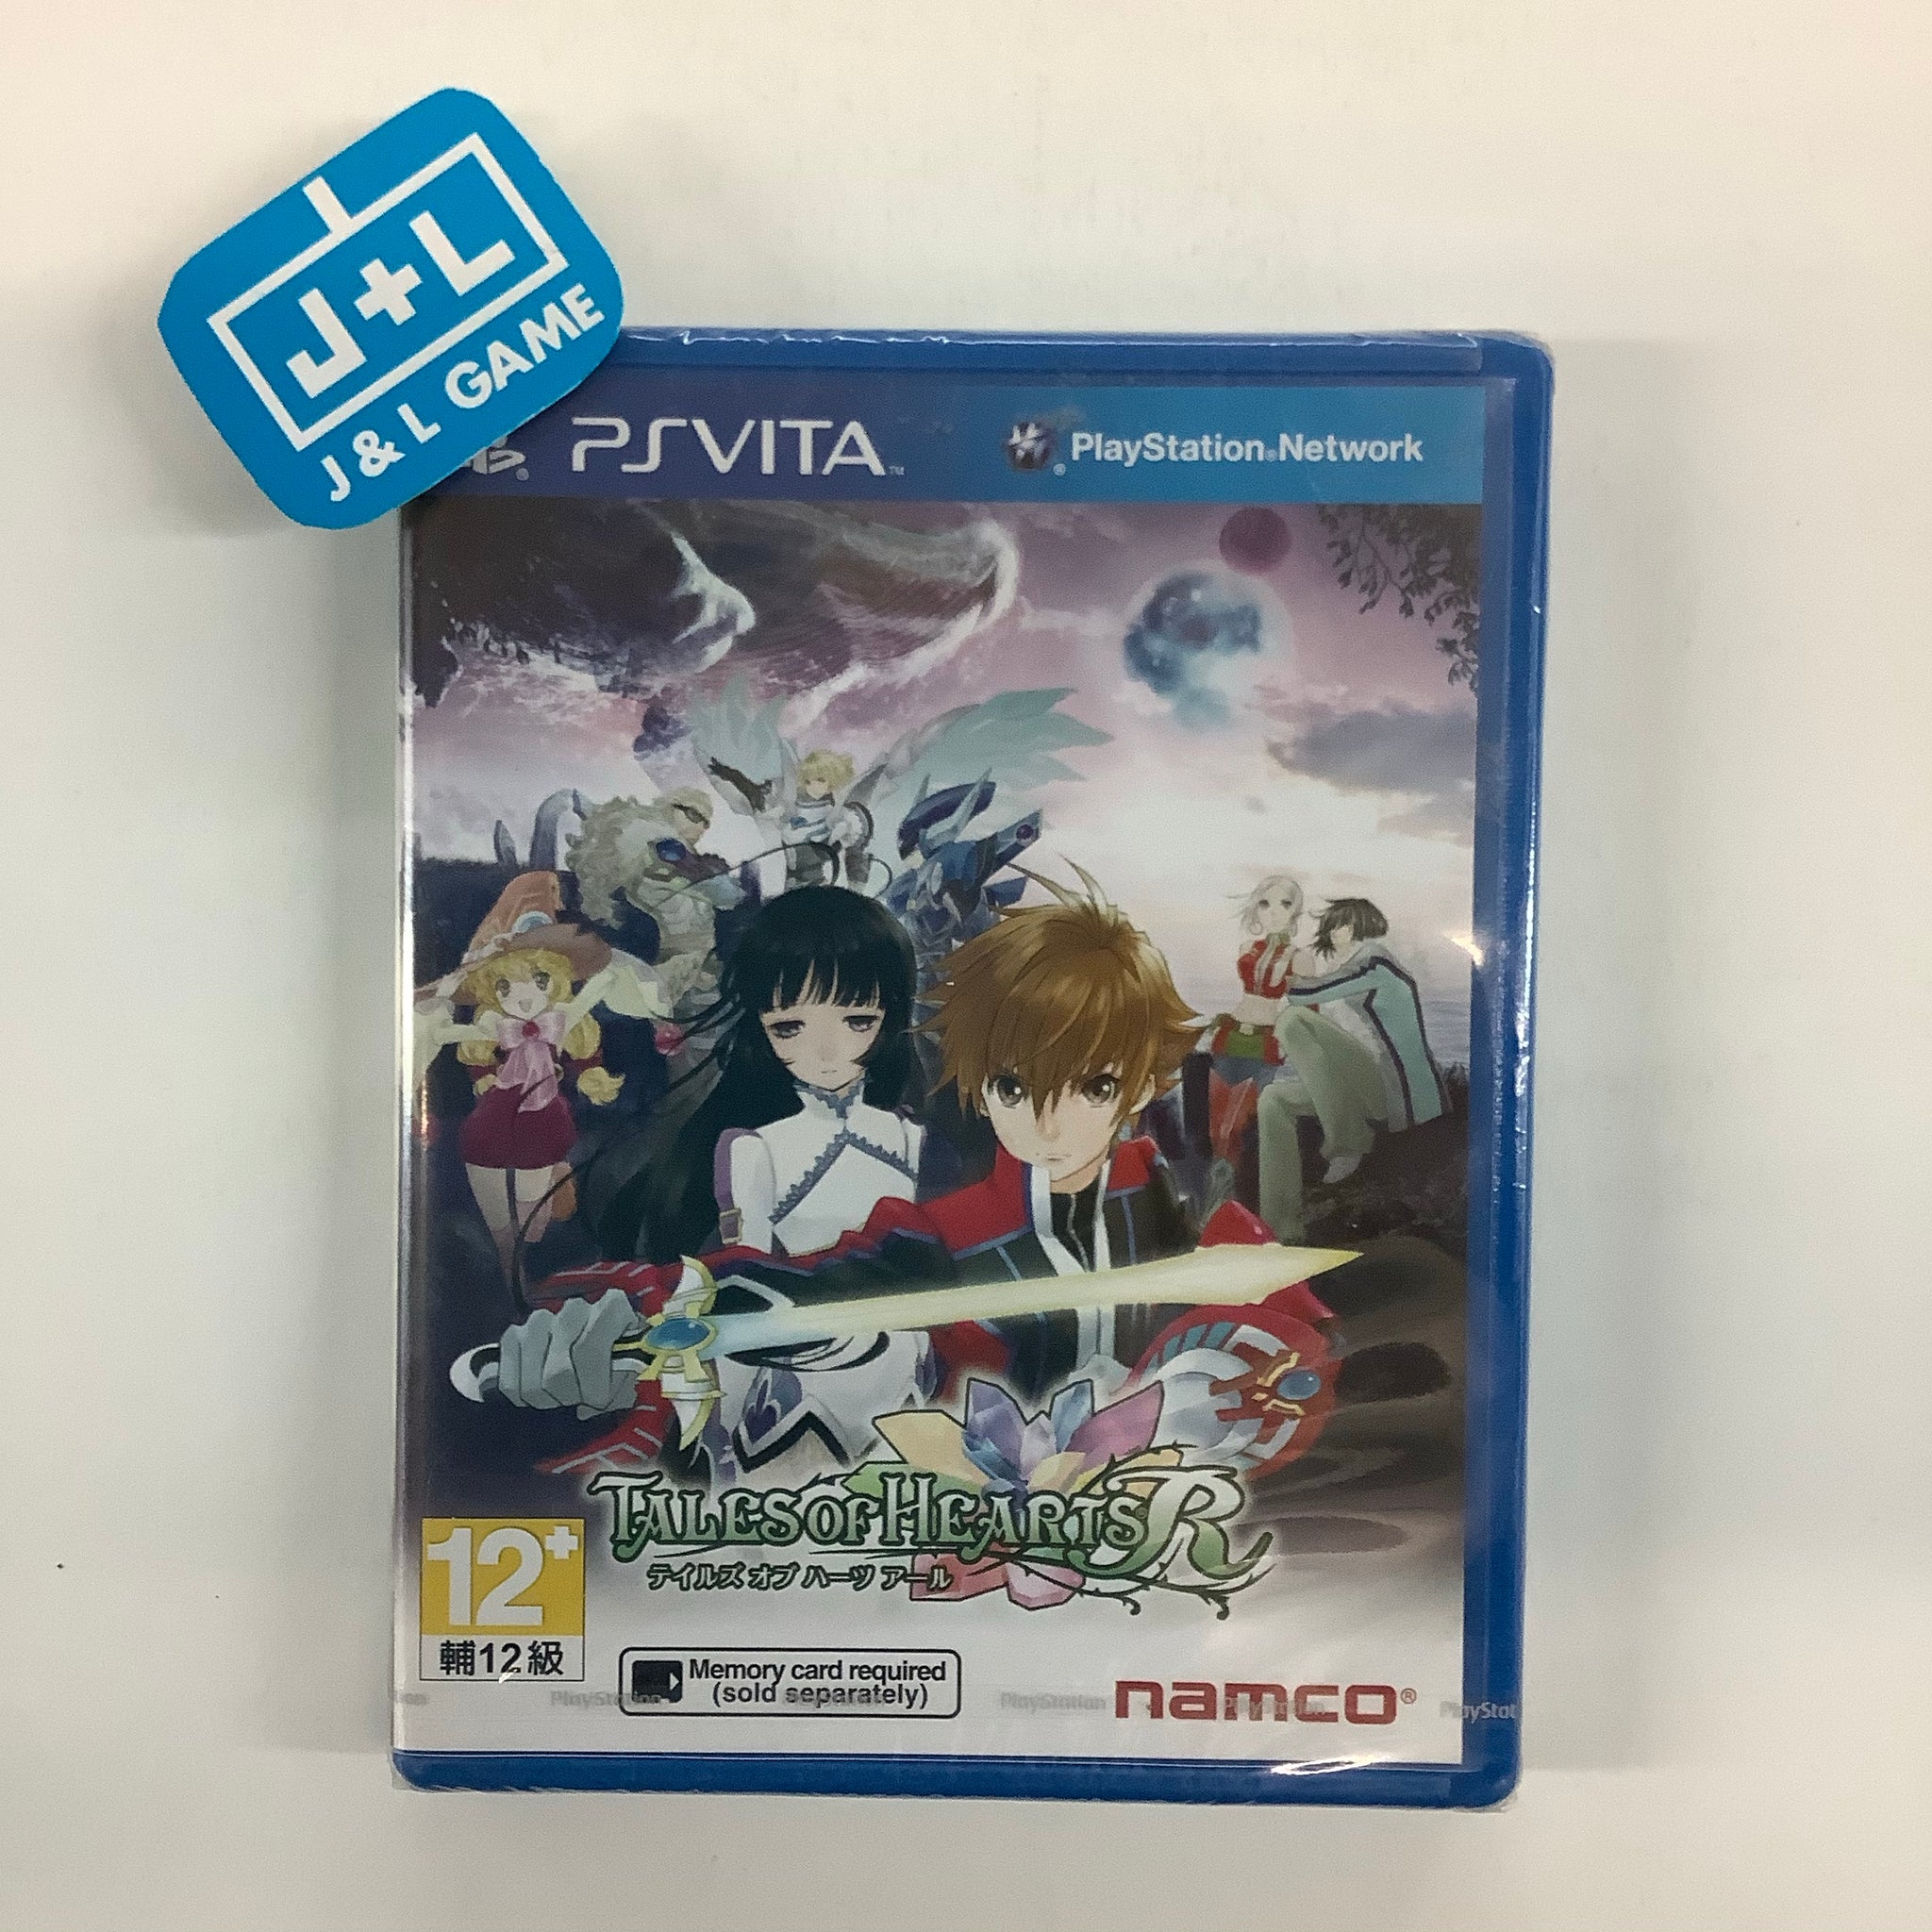 Tales of Hearts R (Japanese Sub)  - (PSV) PlayStation Vita (Asia Import) Video Games Bandai Namco Games   